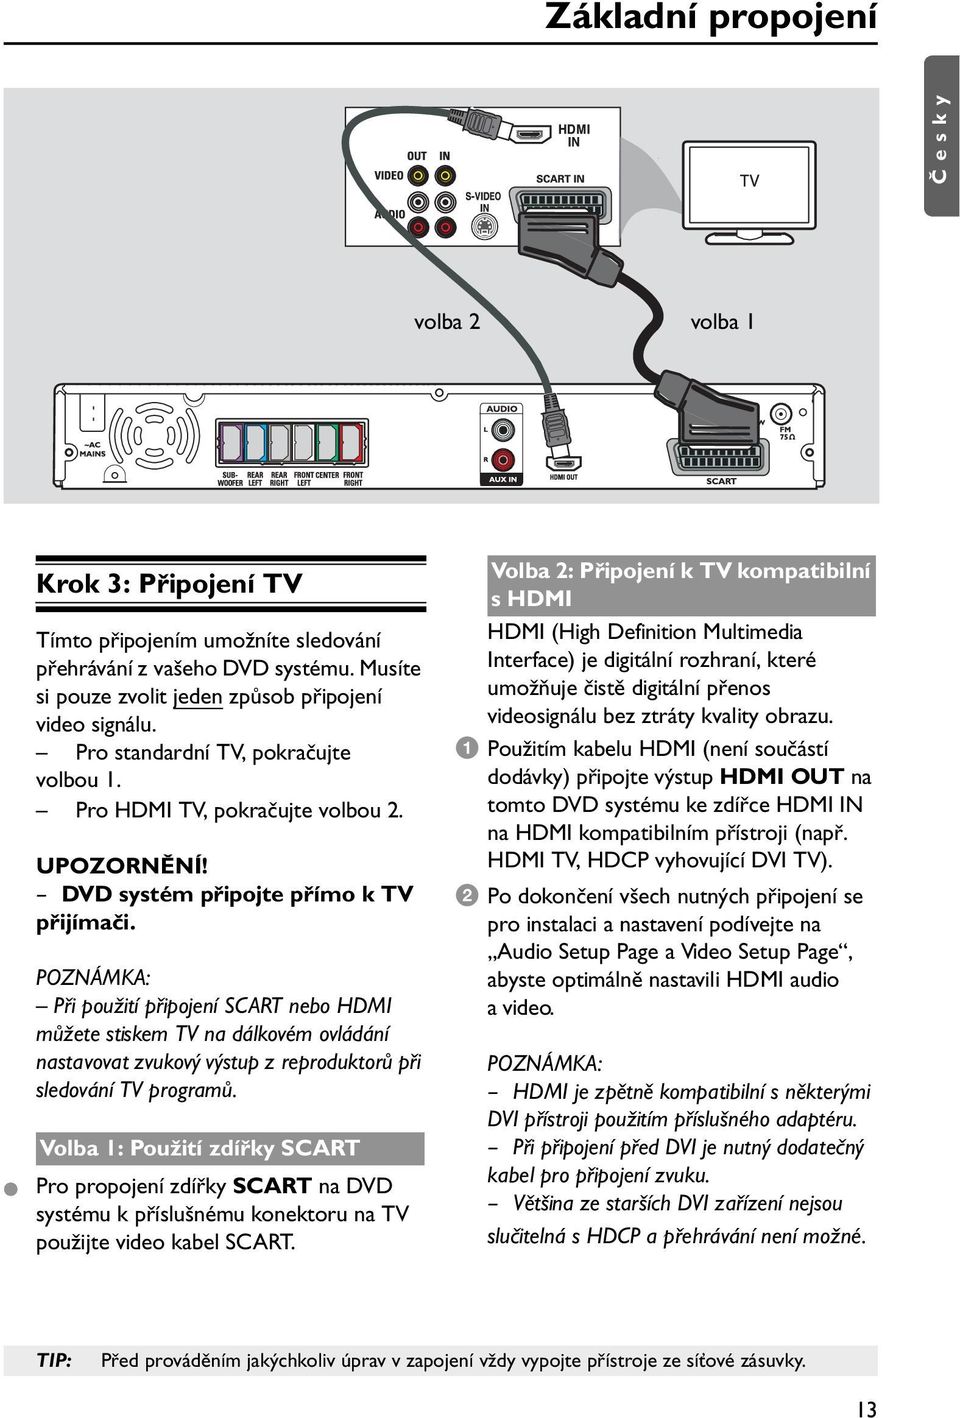 POZNÁMKA: Při použití připojení SCART nebo HDMI můžete stiskem TV na dálkovém ovládání nastavovat zvukový výstup z reproduktorů při sledování TV programů.